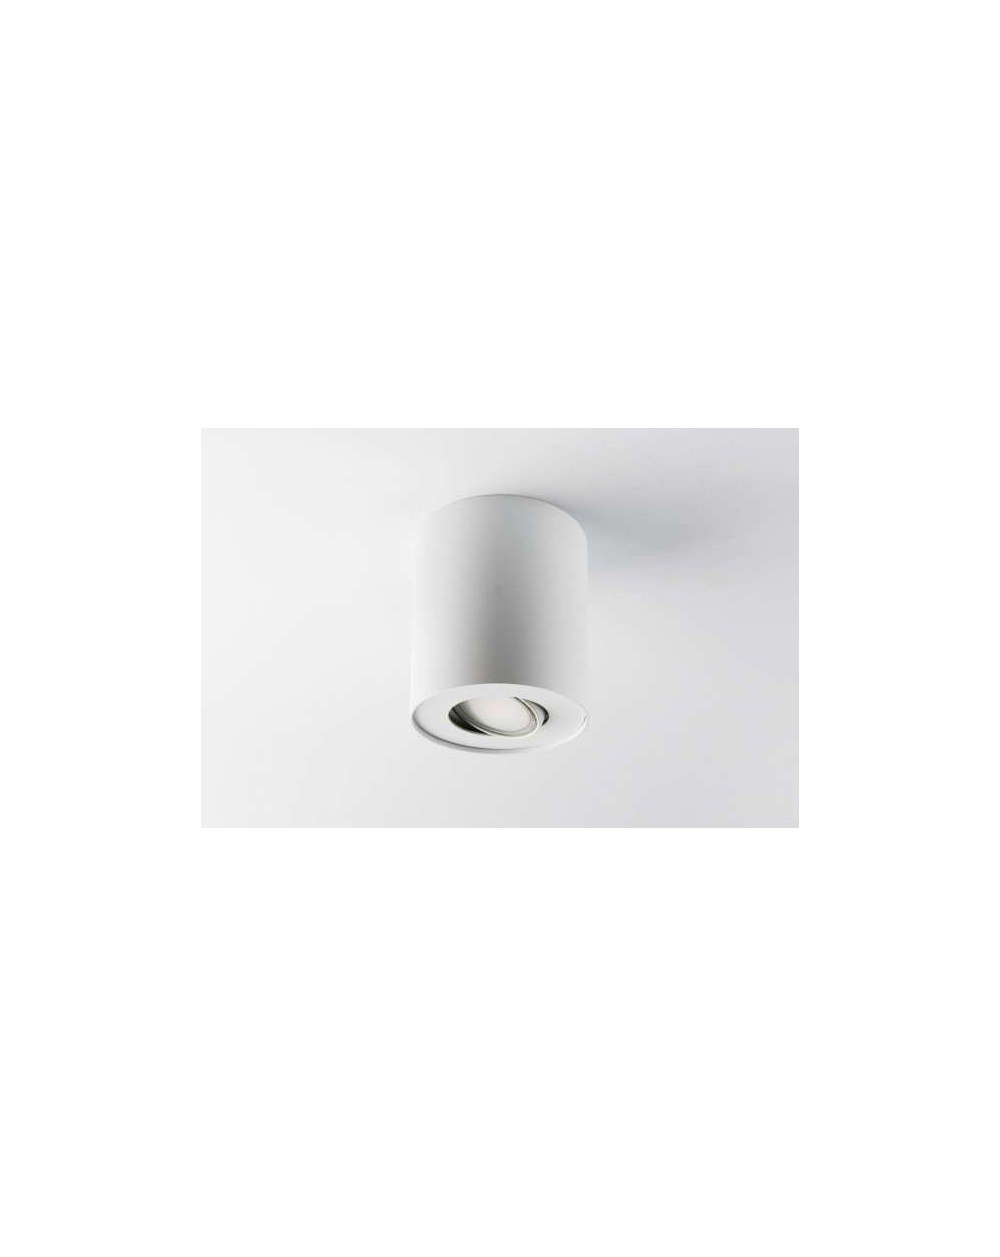 Natynkowa lampa sufitowa MyTube NT GU10 - Mistic oprawa okrągła mat biały/srebrny wysokość 120 mm z regulacją źródła światła